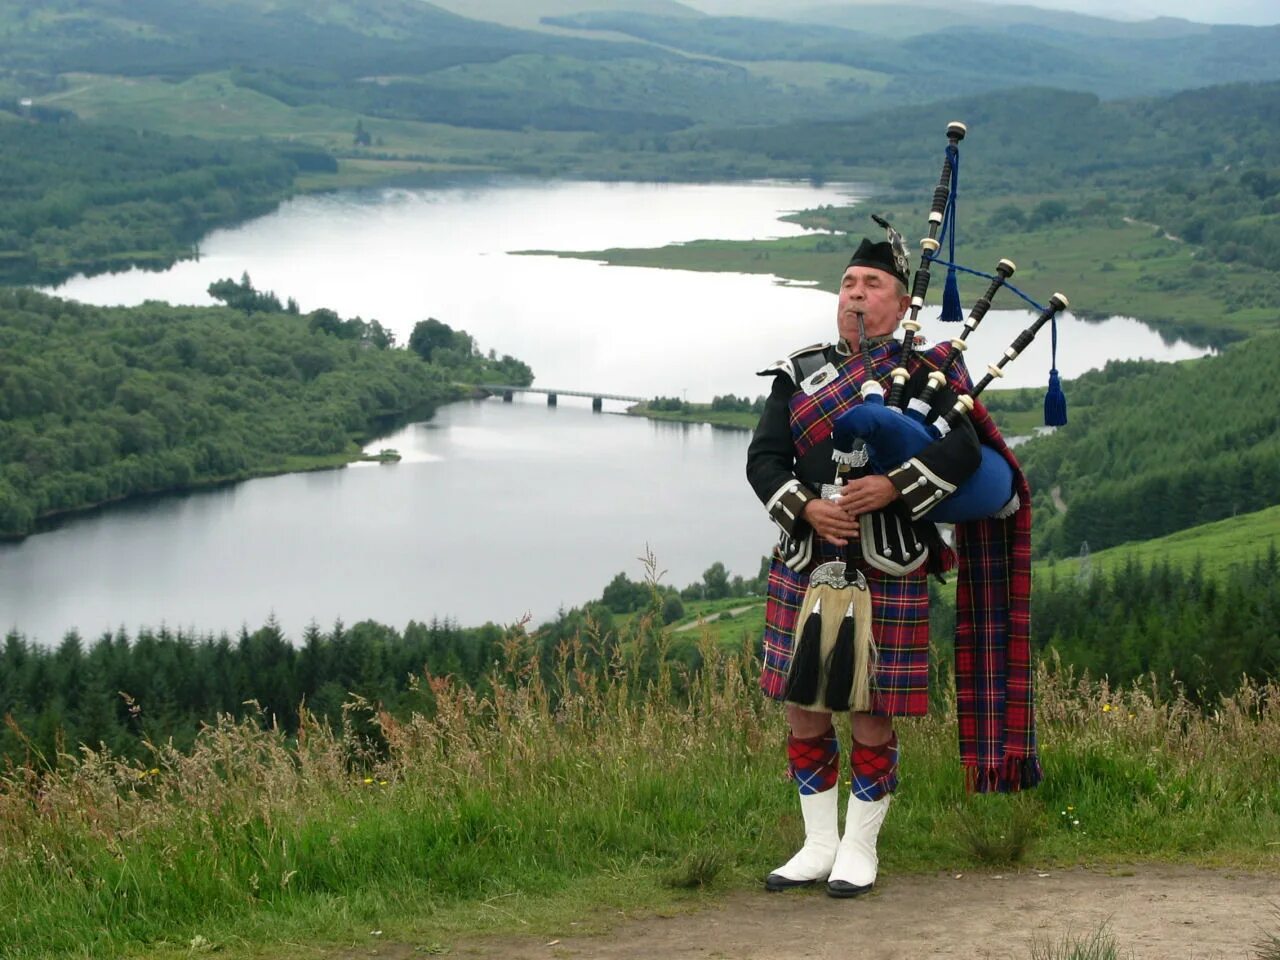 Шотландская волынка музыка. Шотландия килт волынка. Шотландия музыкальный инструмент национальный волынка. Горец Шотландия килт. Горец Шотландия волынка килт.